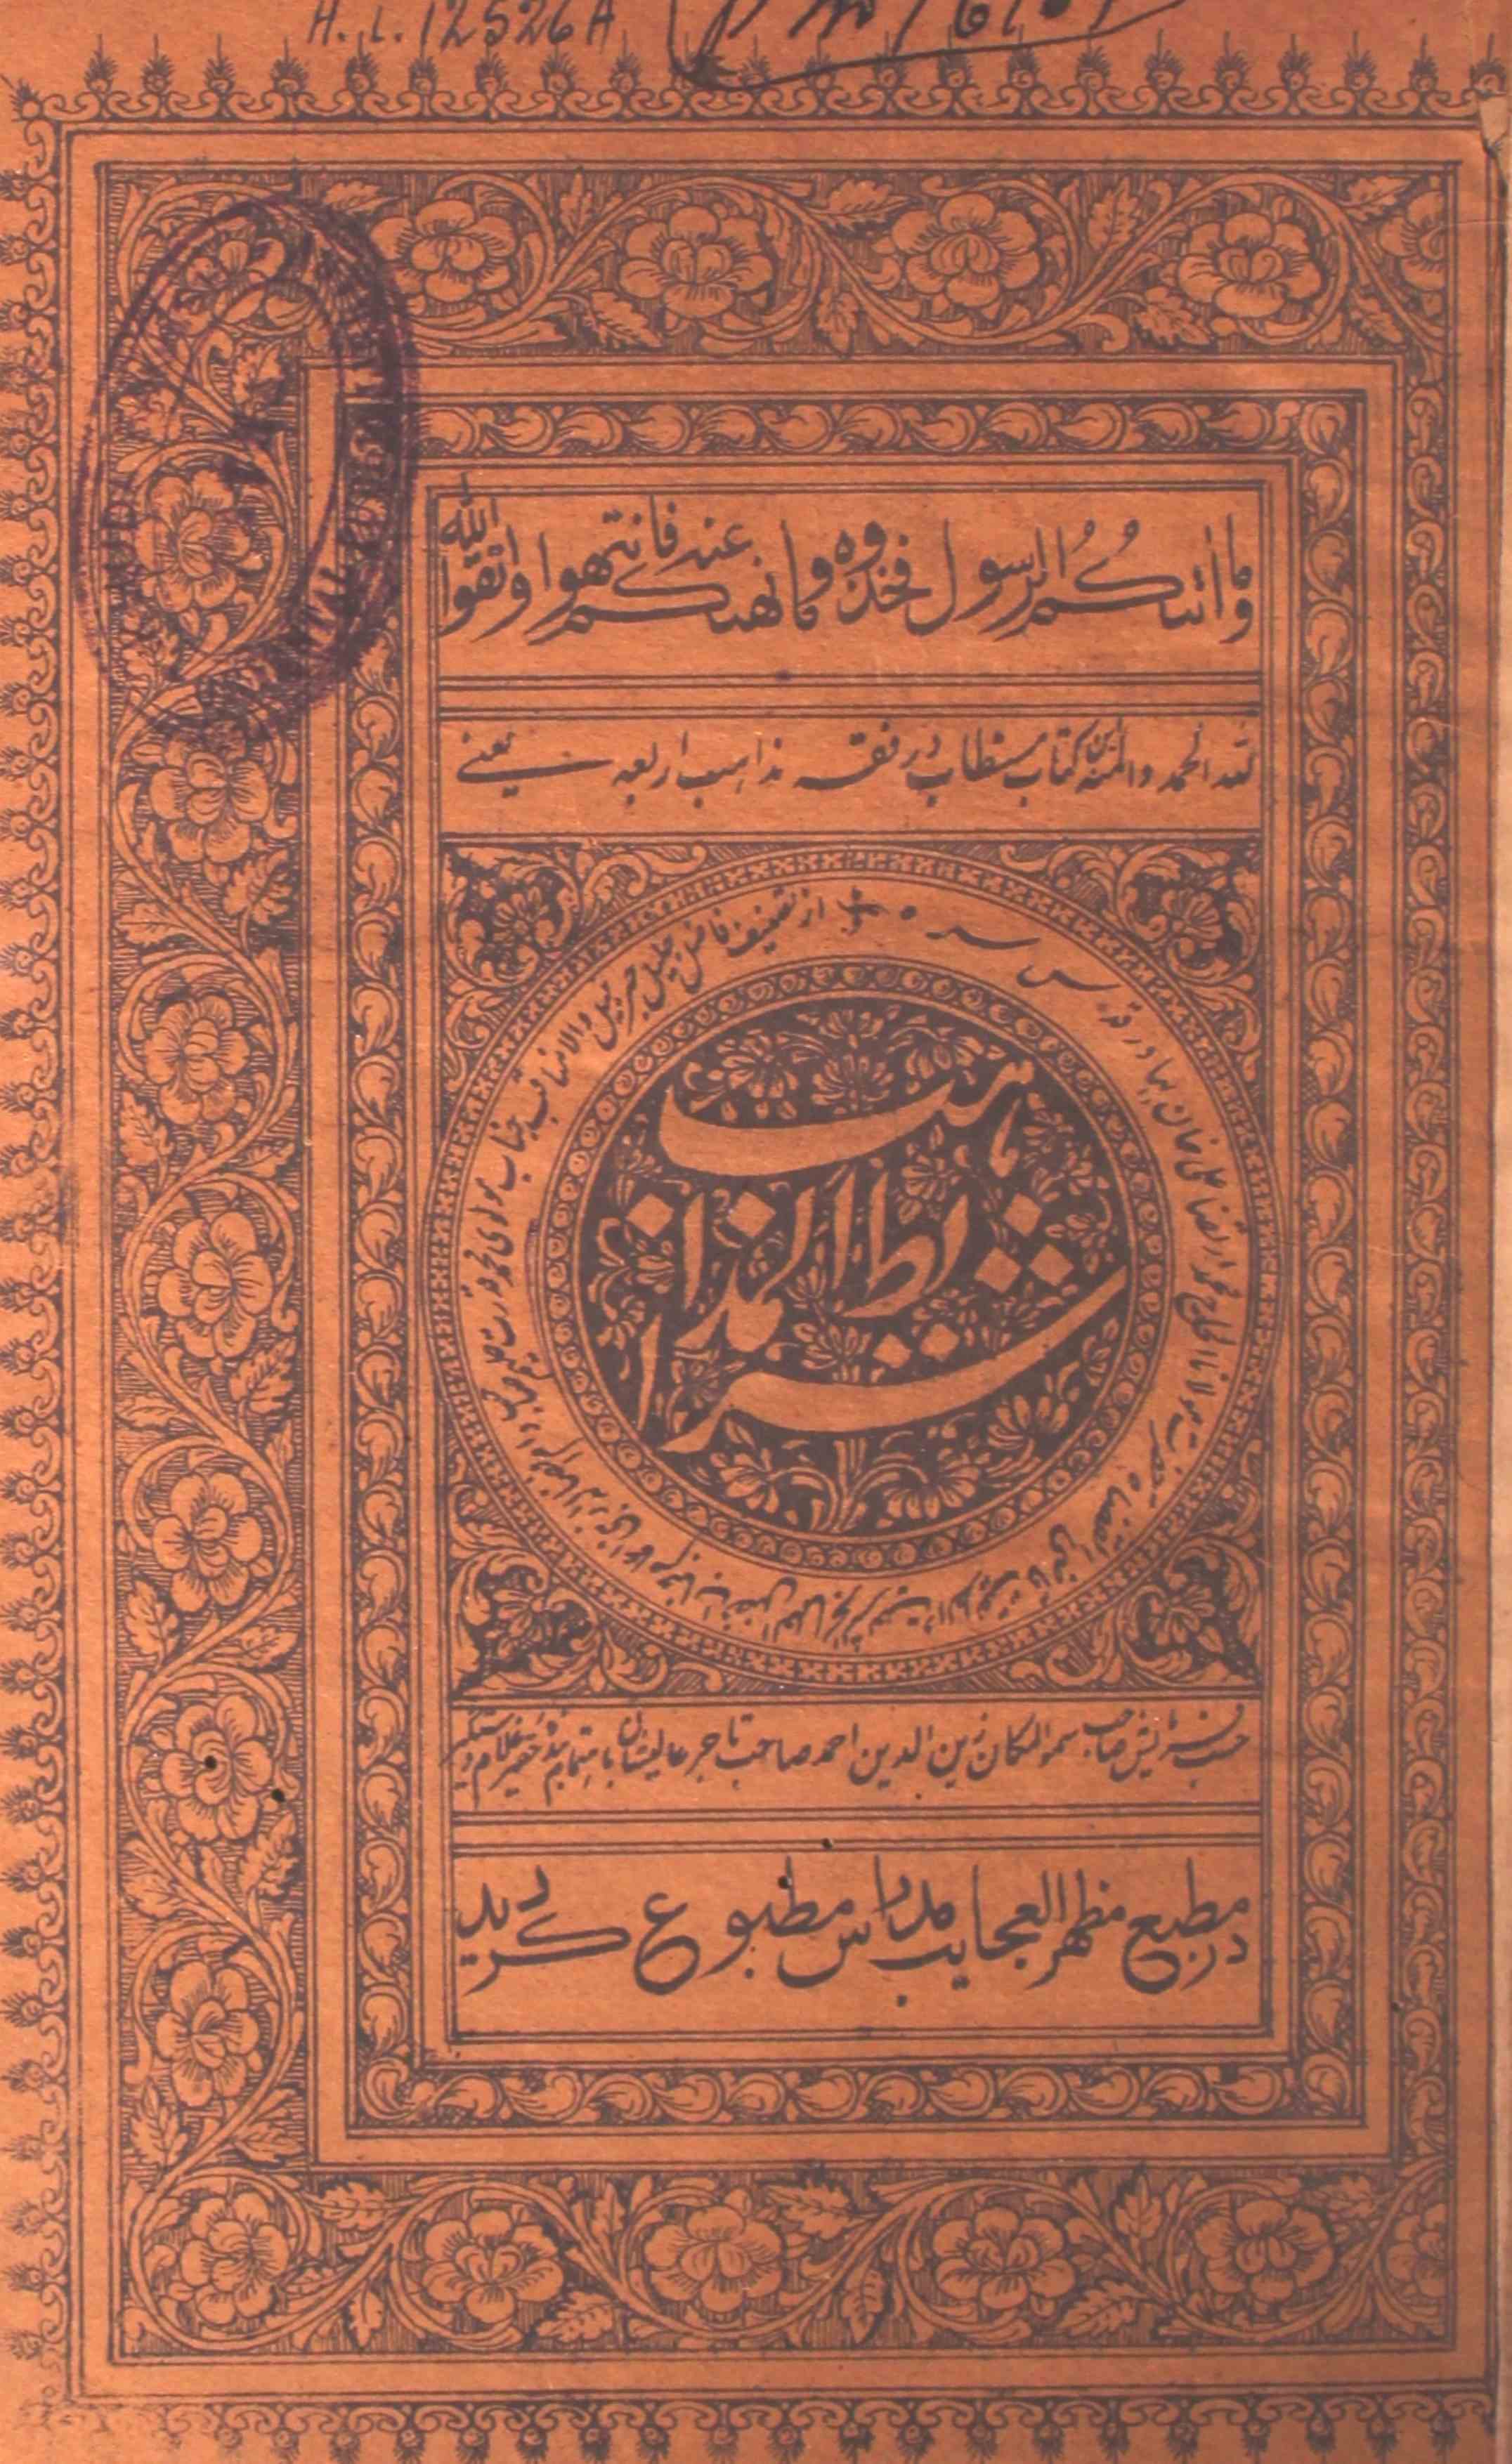 Sharait-ul-Mazahib